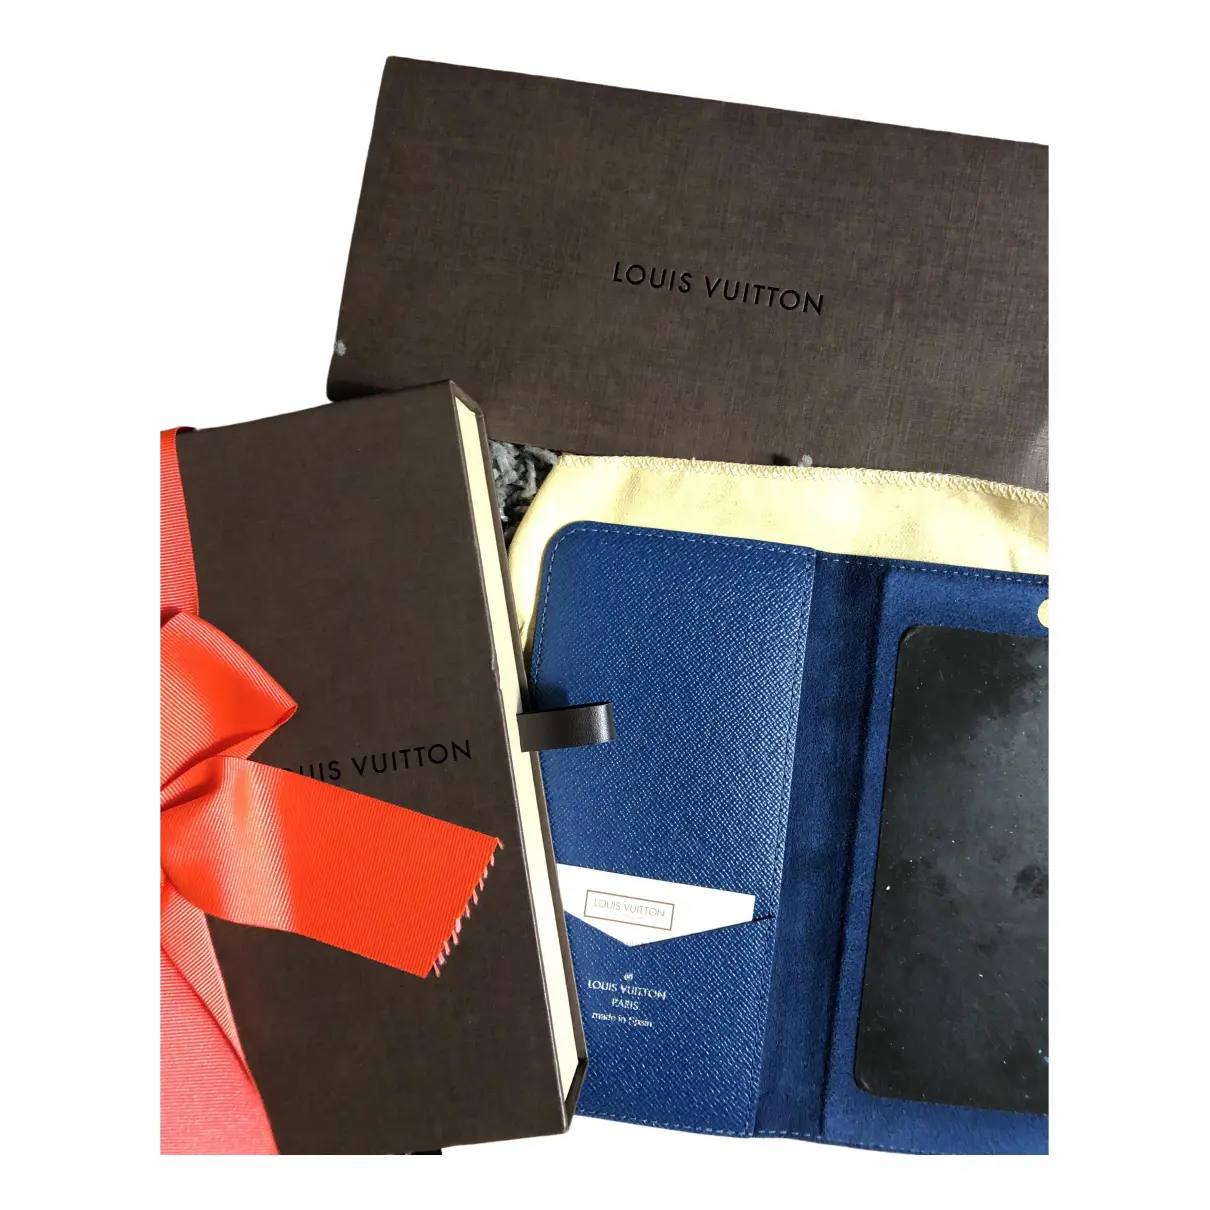 Buy Louis Vuitton Cloth iphone case online